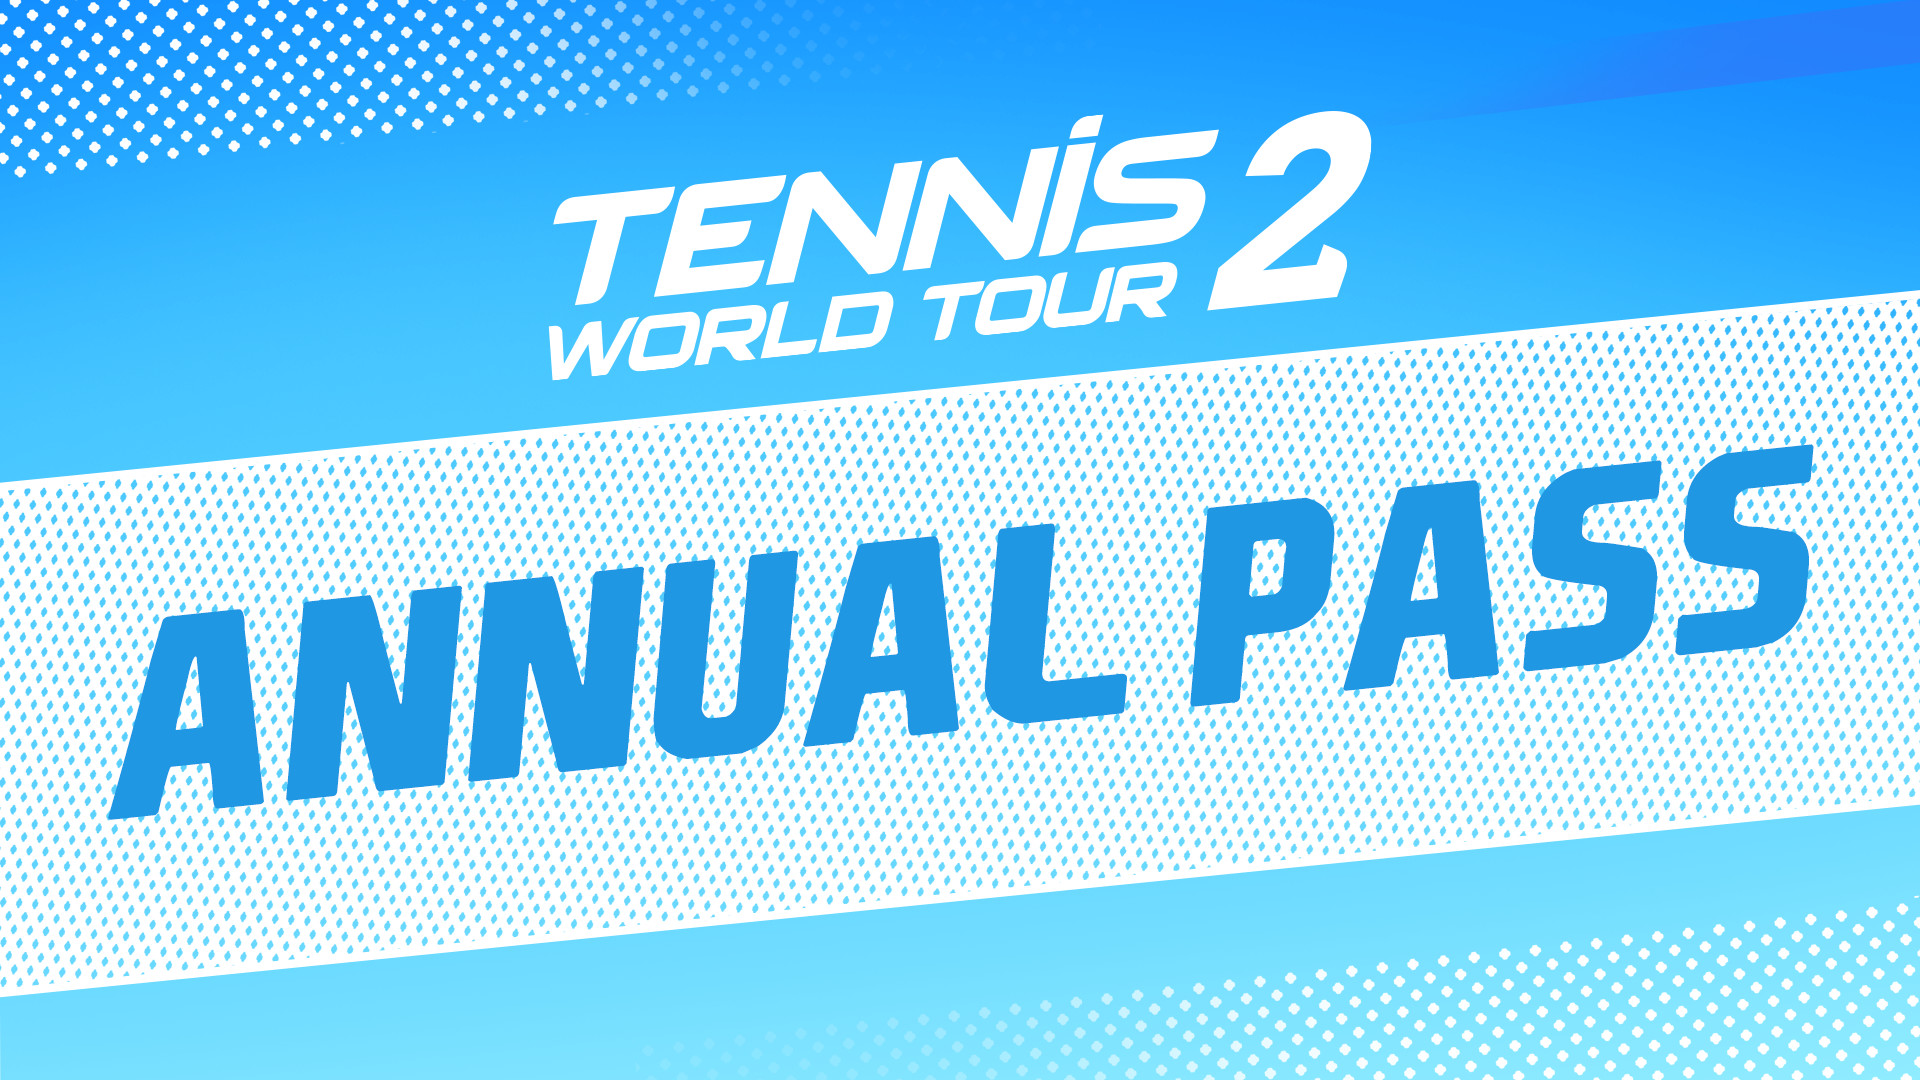 Tennis World Tour 2 - Annual Pass DLC Steam CD Key, $7.23